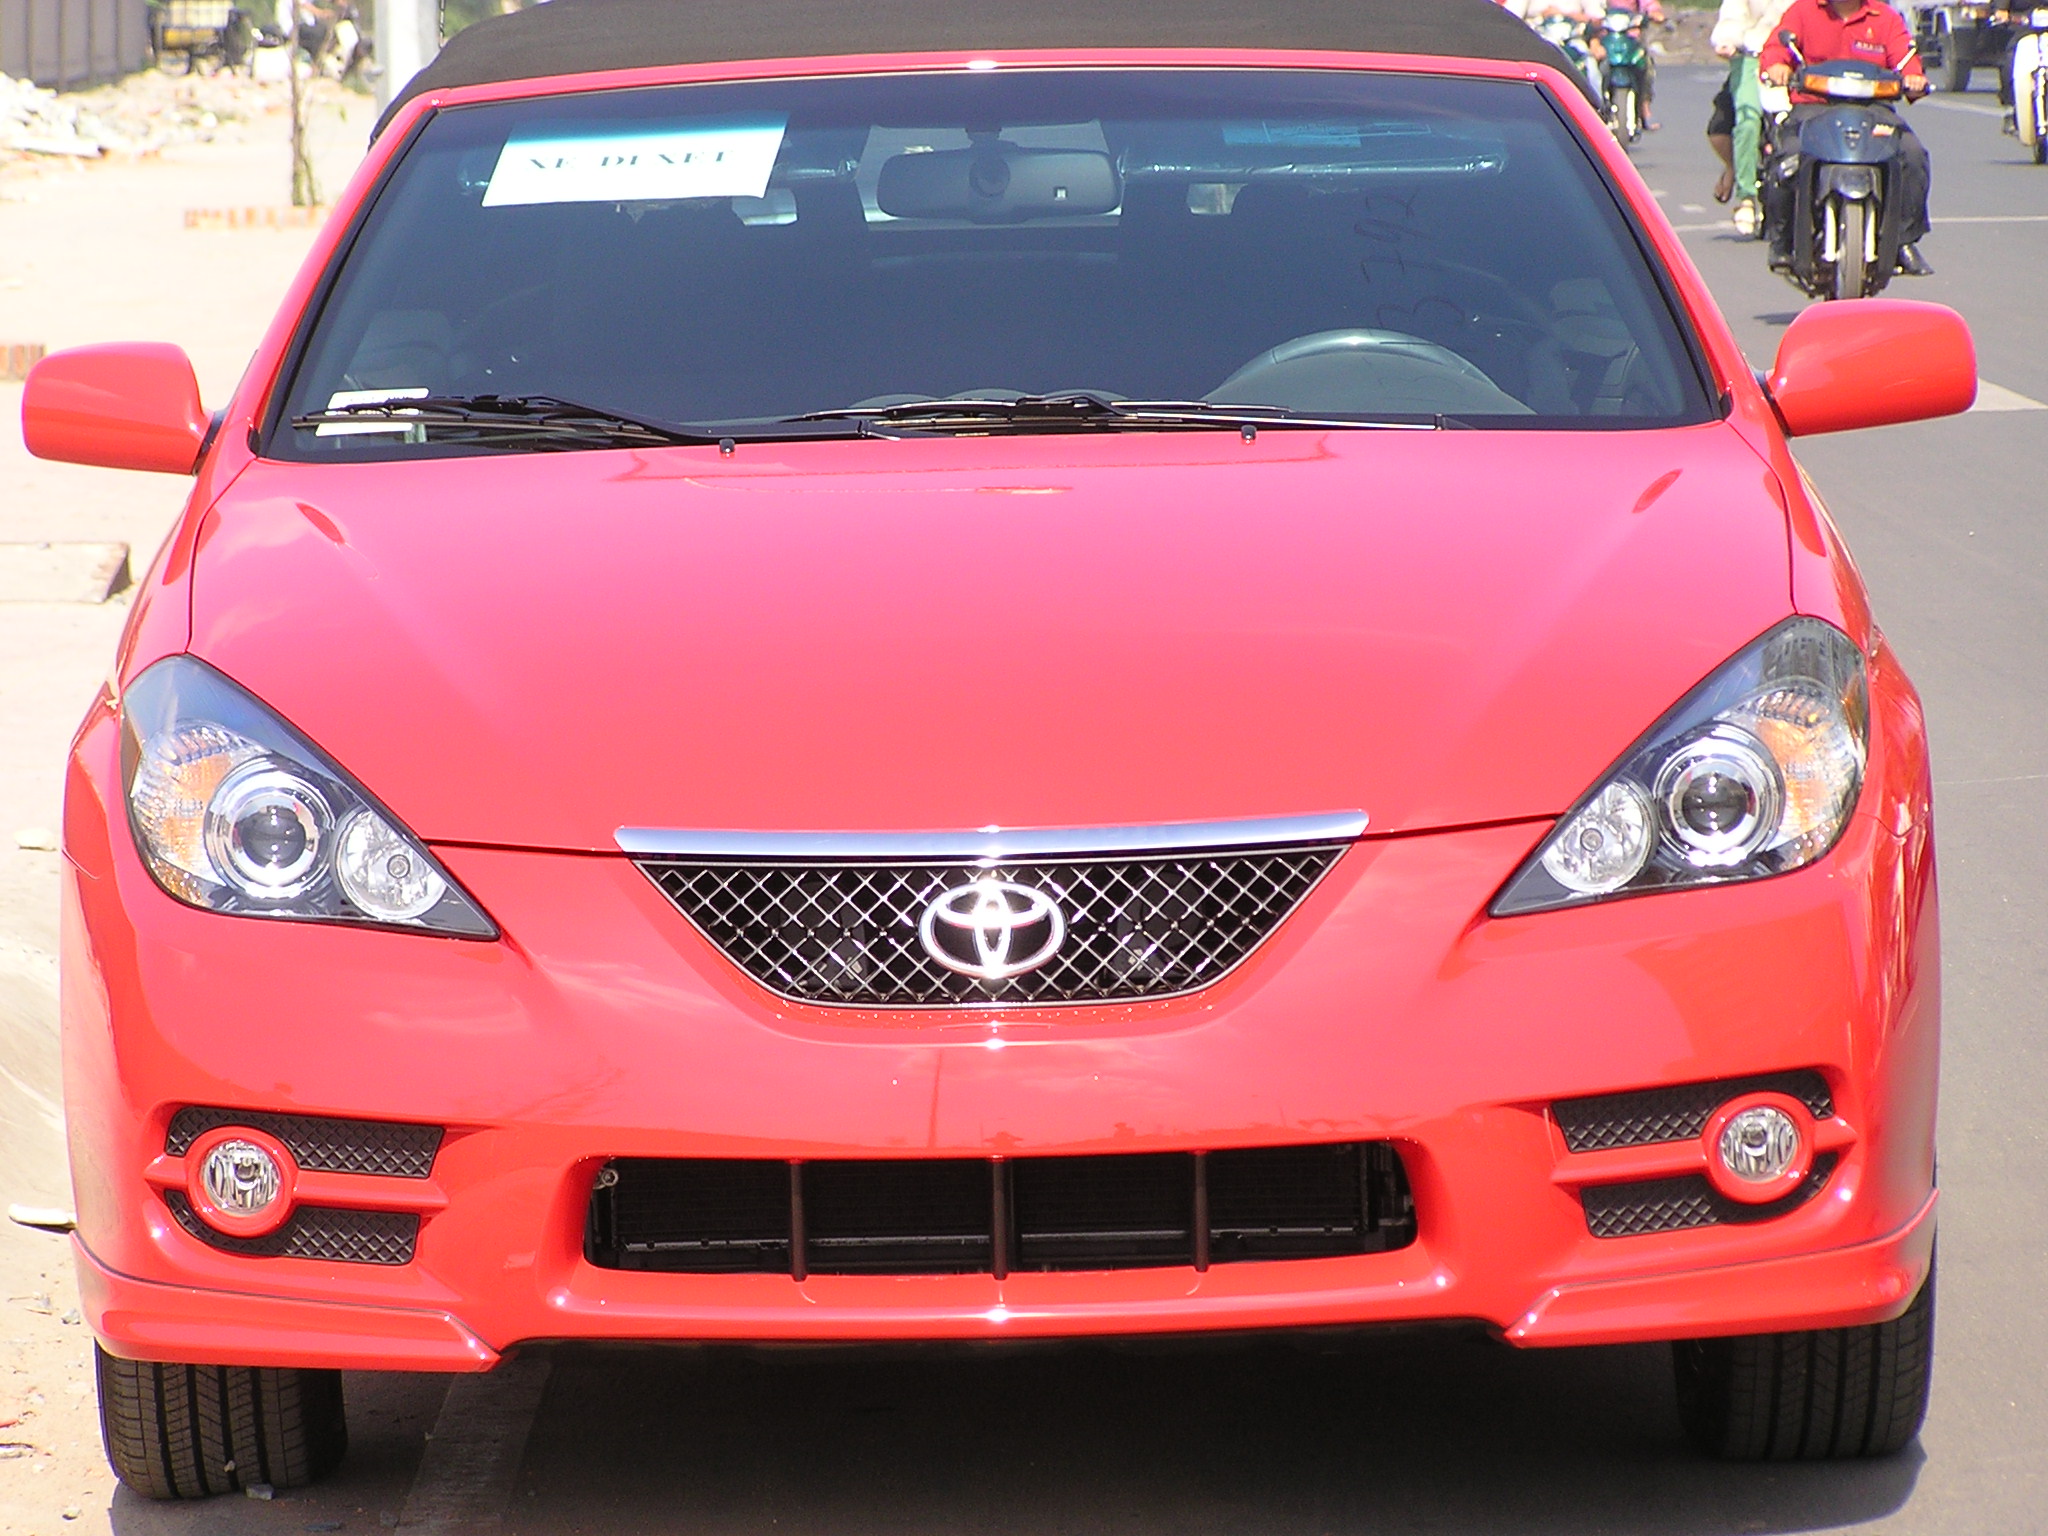 Toyota Solara Mui Trần Màu Đỏ Hình ảnh Sẵn có  Tải xuống Hình ảnh Ngay bây  giờ  2000 Ô tô  Xe động cơ trên đường bộ Không có người  Số người   iStock